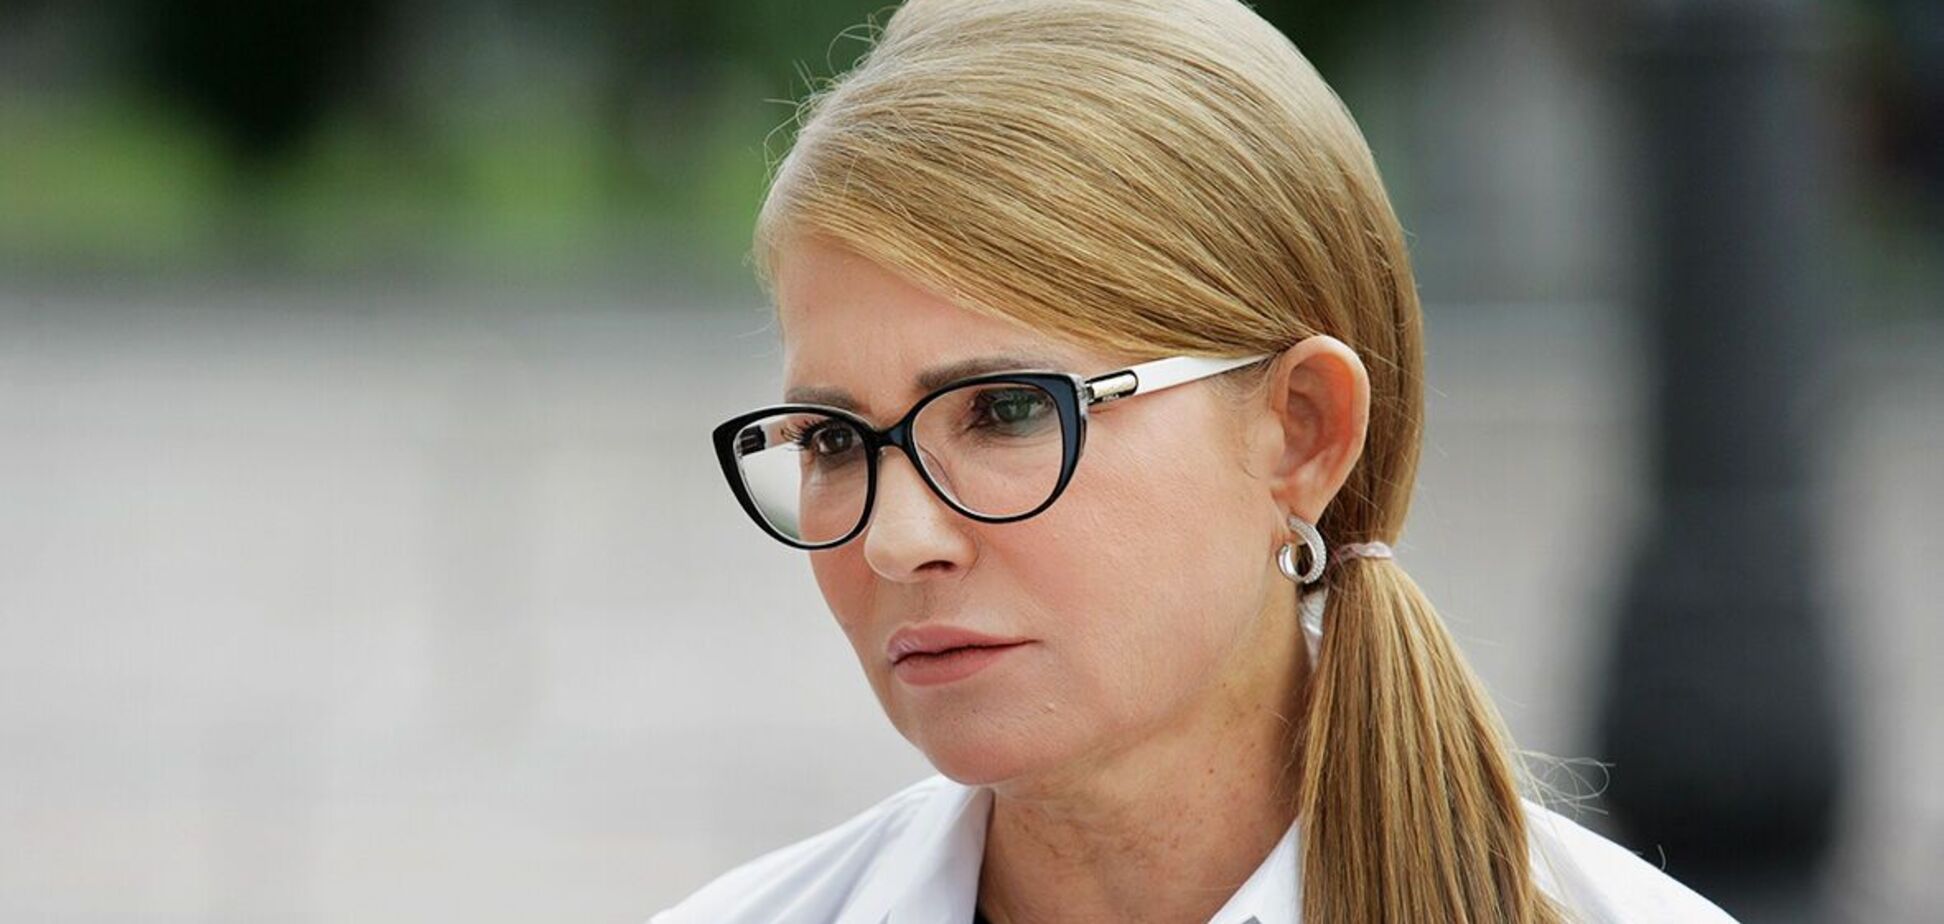 План Юлии Тимошенко способен защитить людей, считает эксперт